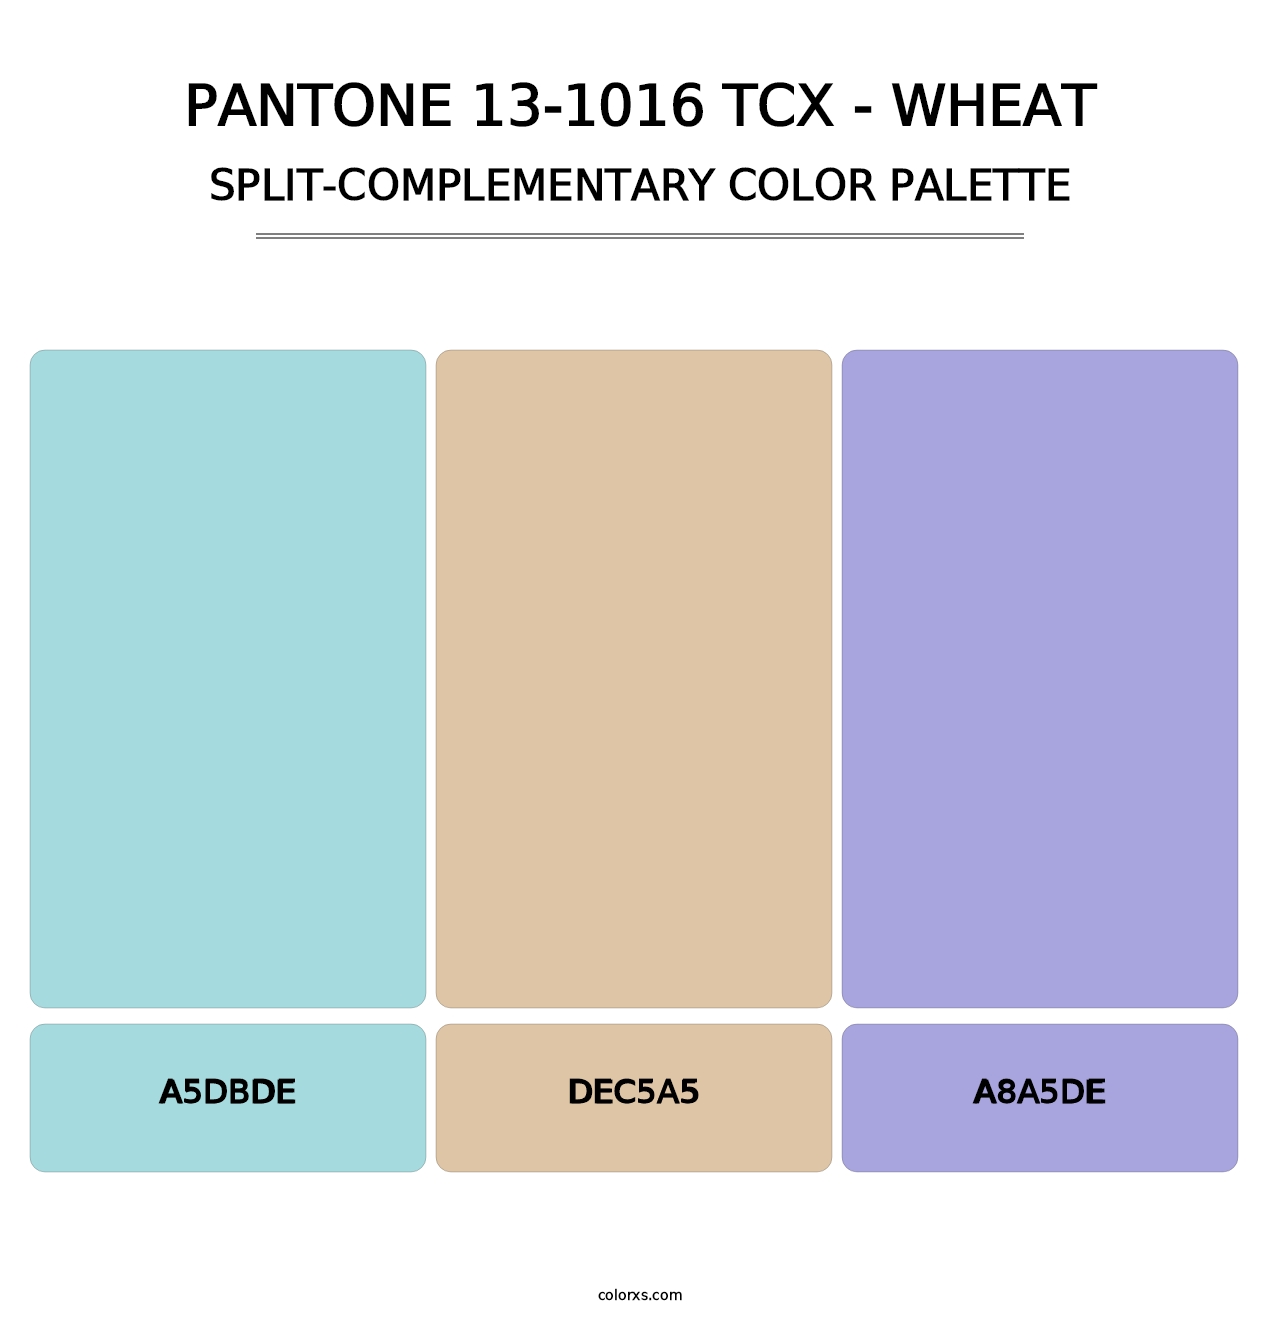 PANTONE 13-1016 TCX - Wheat - Split-Complementary Color Palette